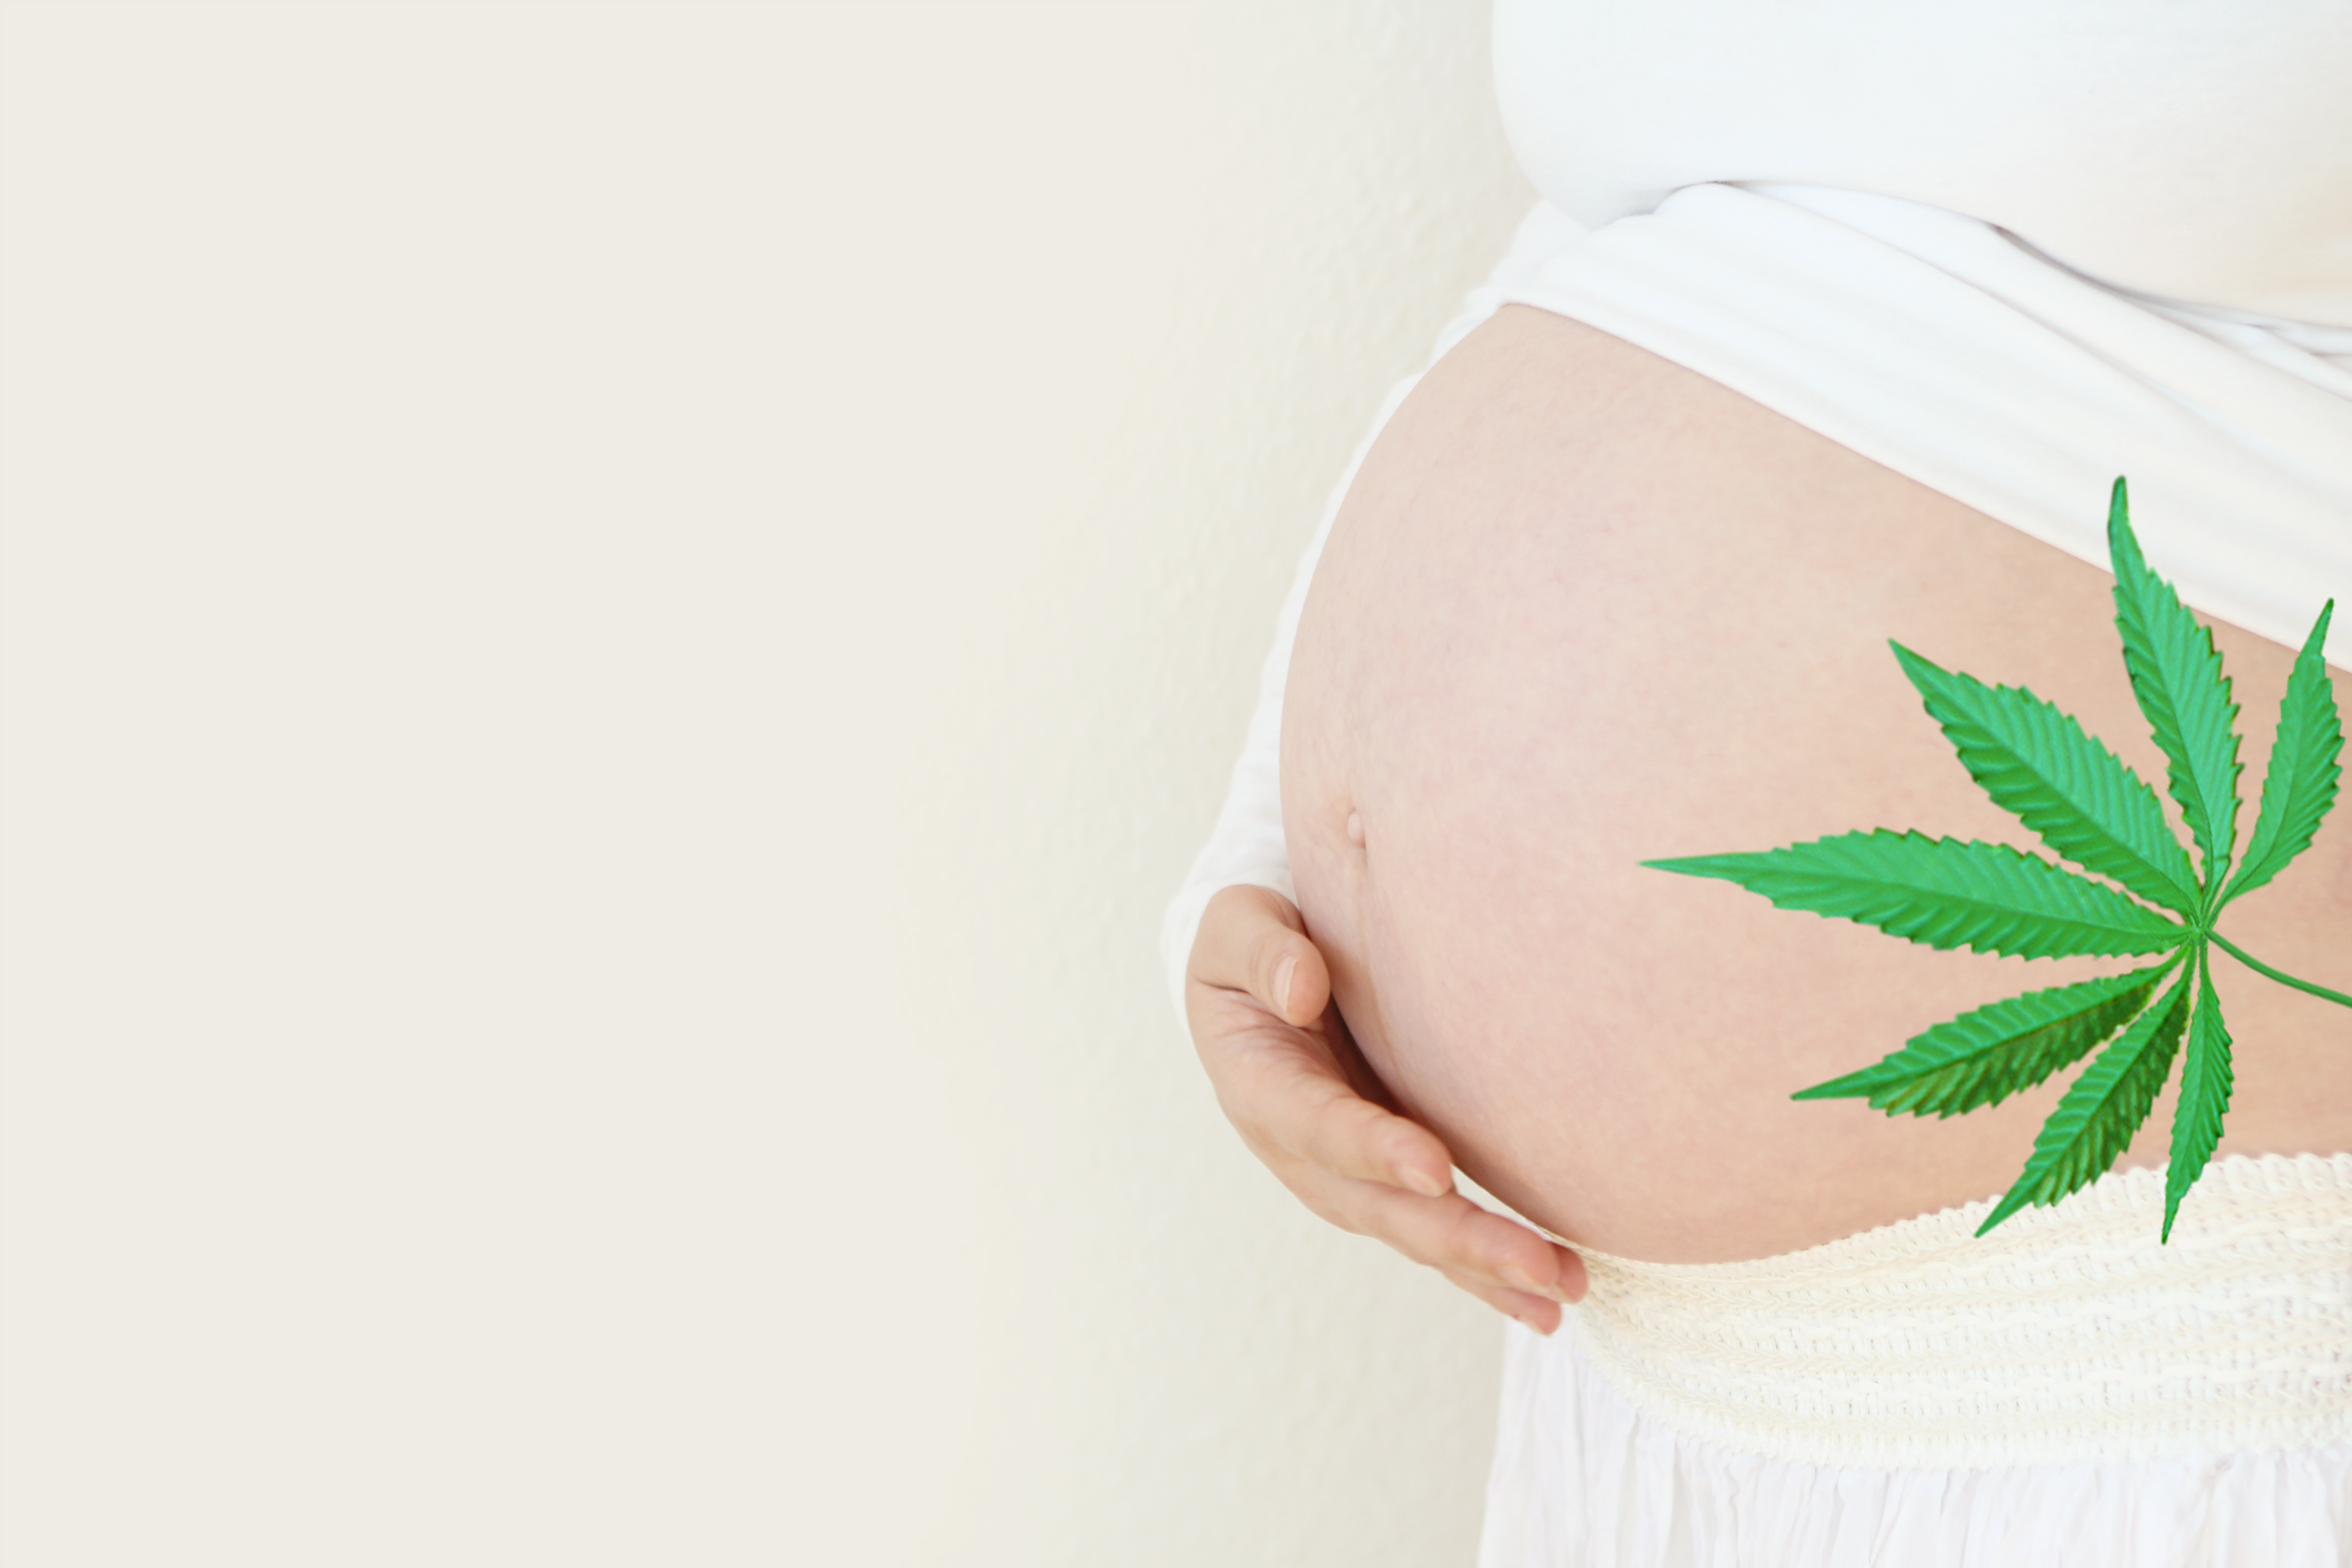 C’est une nouvelle alerte sur les effets de l’exposition au cannabis, in utero, durant la période sensible de développement du cerveau (Visuel Adobe Stock 292844205)